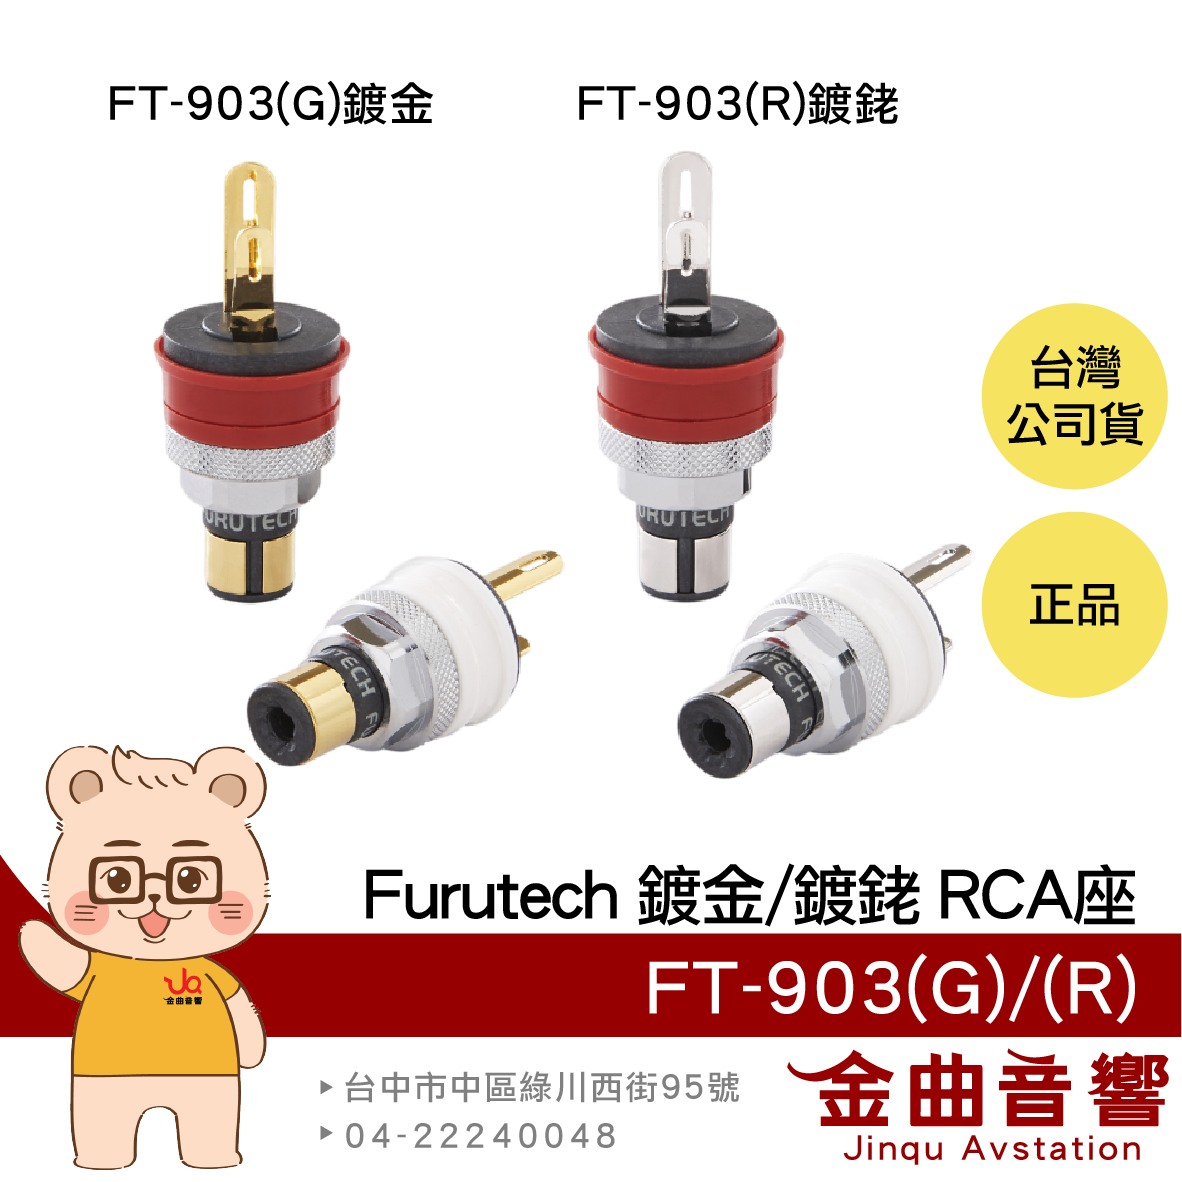 FURUTECH 古河 FT-903(G) FT-903(R) 鍍金 鍍銠 RCA端座 | 金曲音響